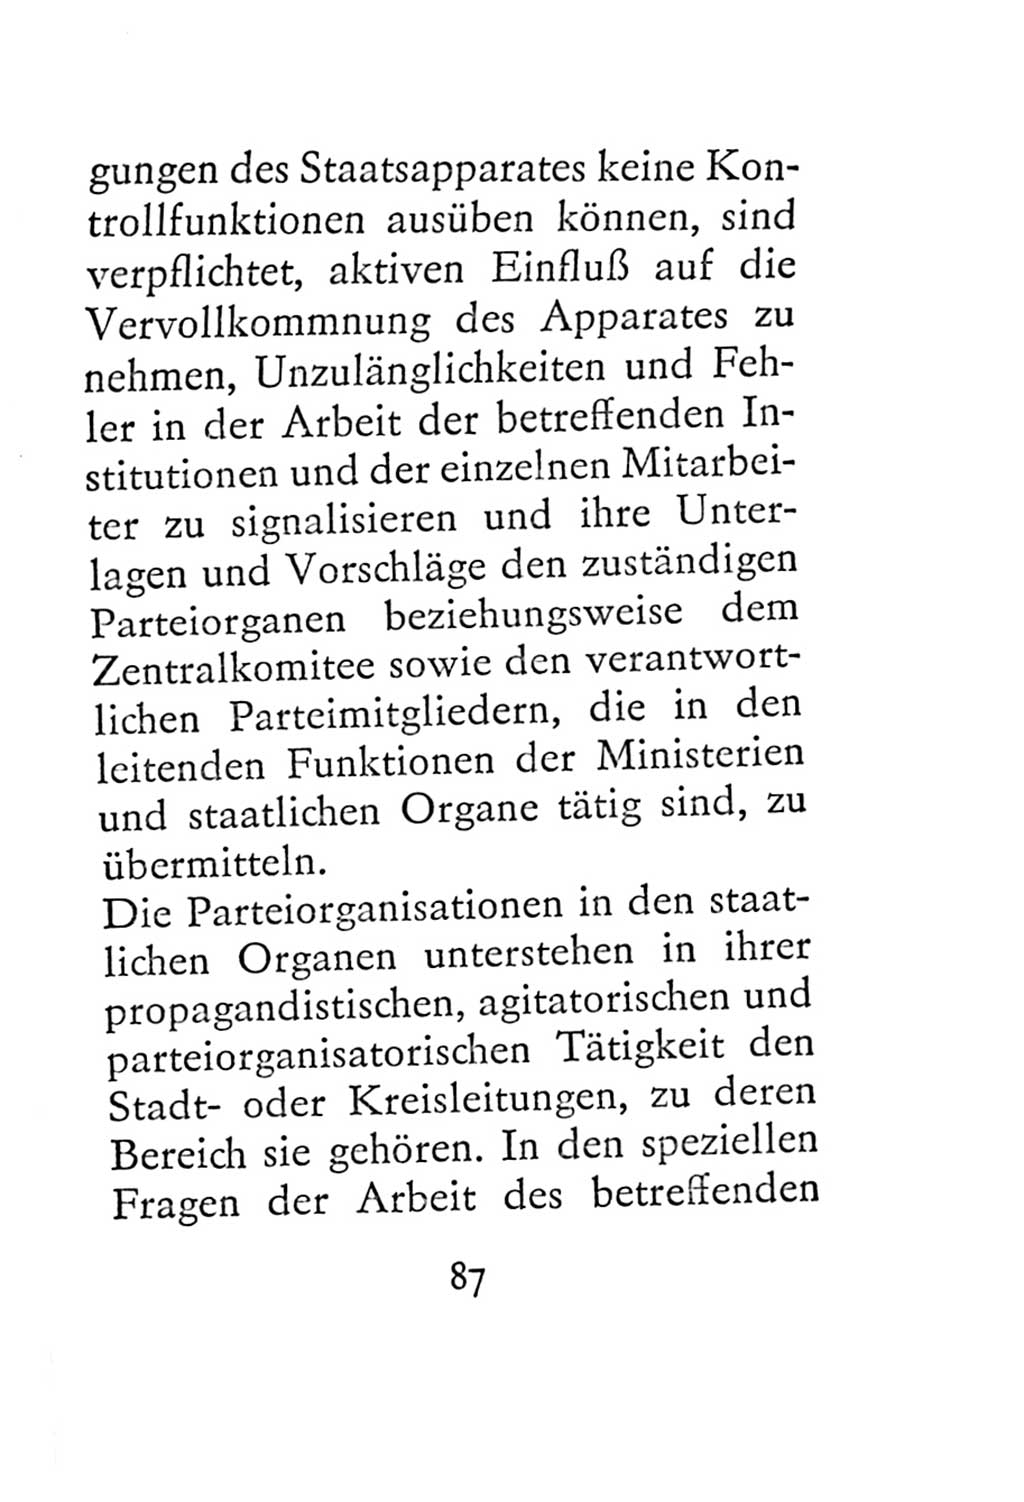 Statut der Sozialistischen Einheitspartei Deutschlands (SED) 1967, Seite 87 (St. SED DDR 1967, S. 87)